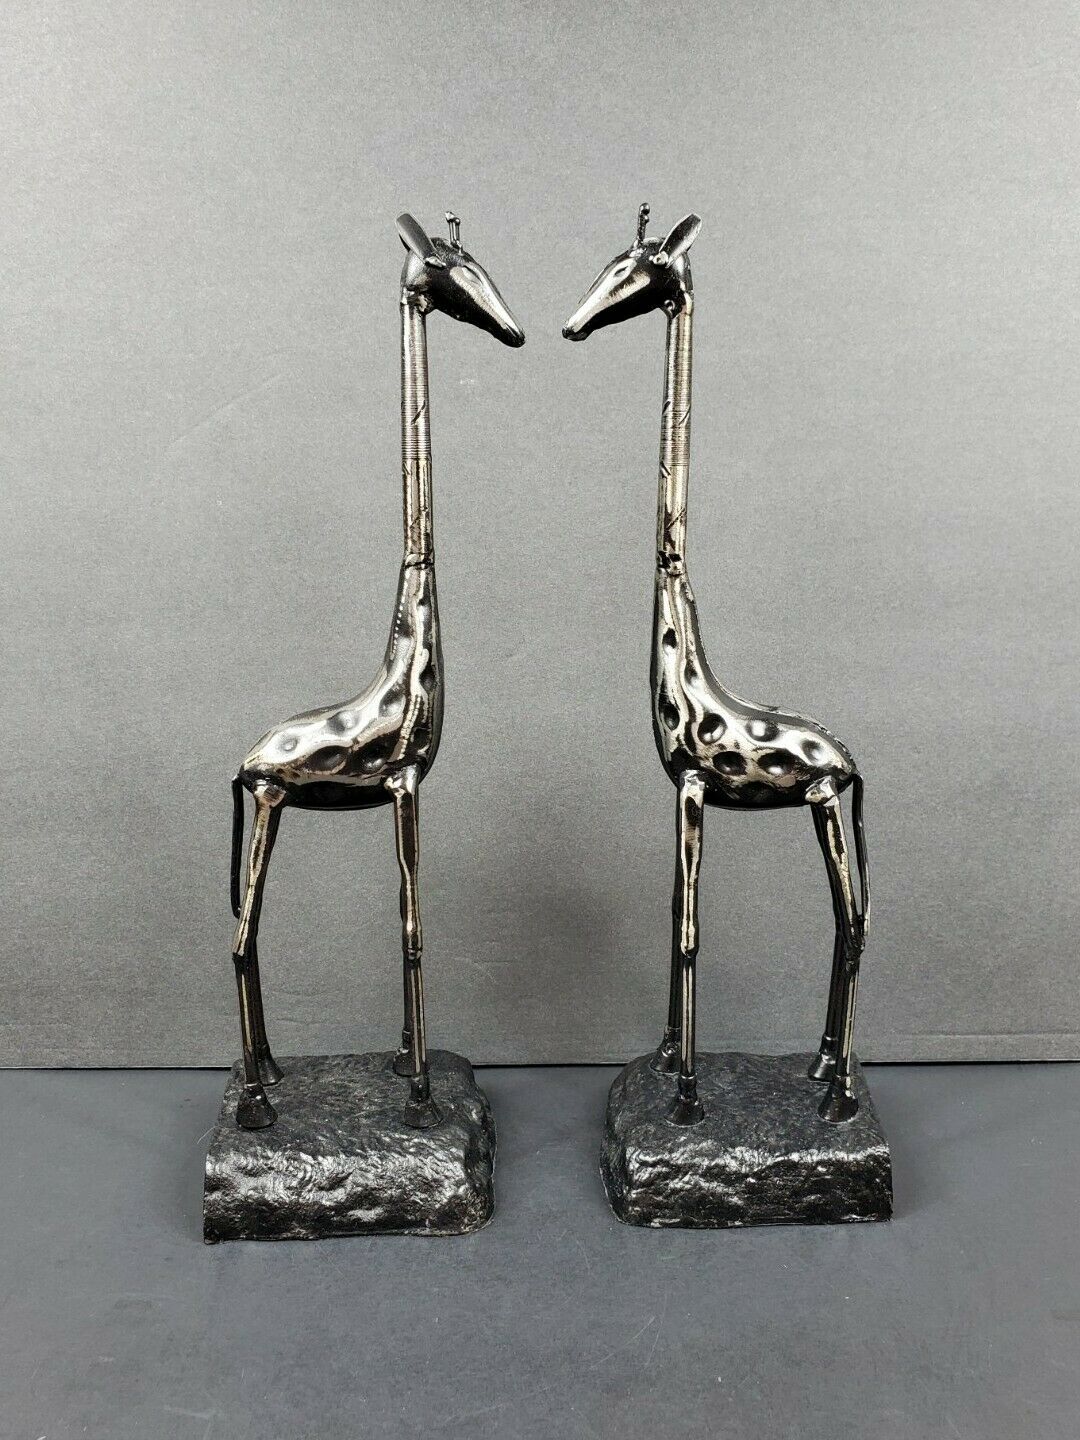 Pair Of 13.25" Metal Giraffe Sculptures Figurines Industrial Modern Black Silver